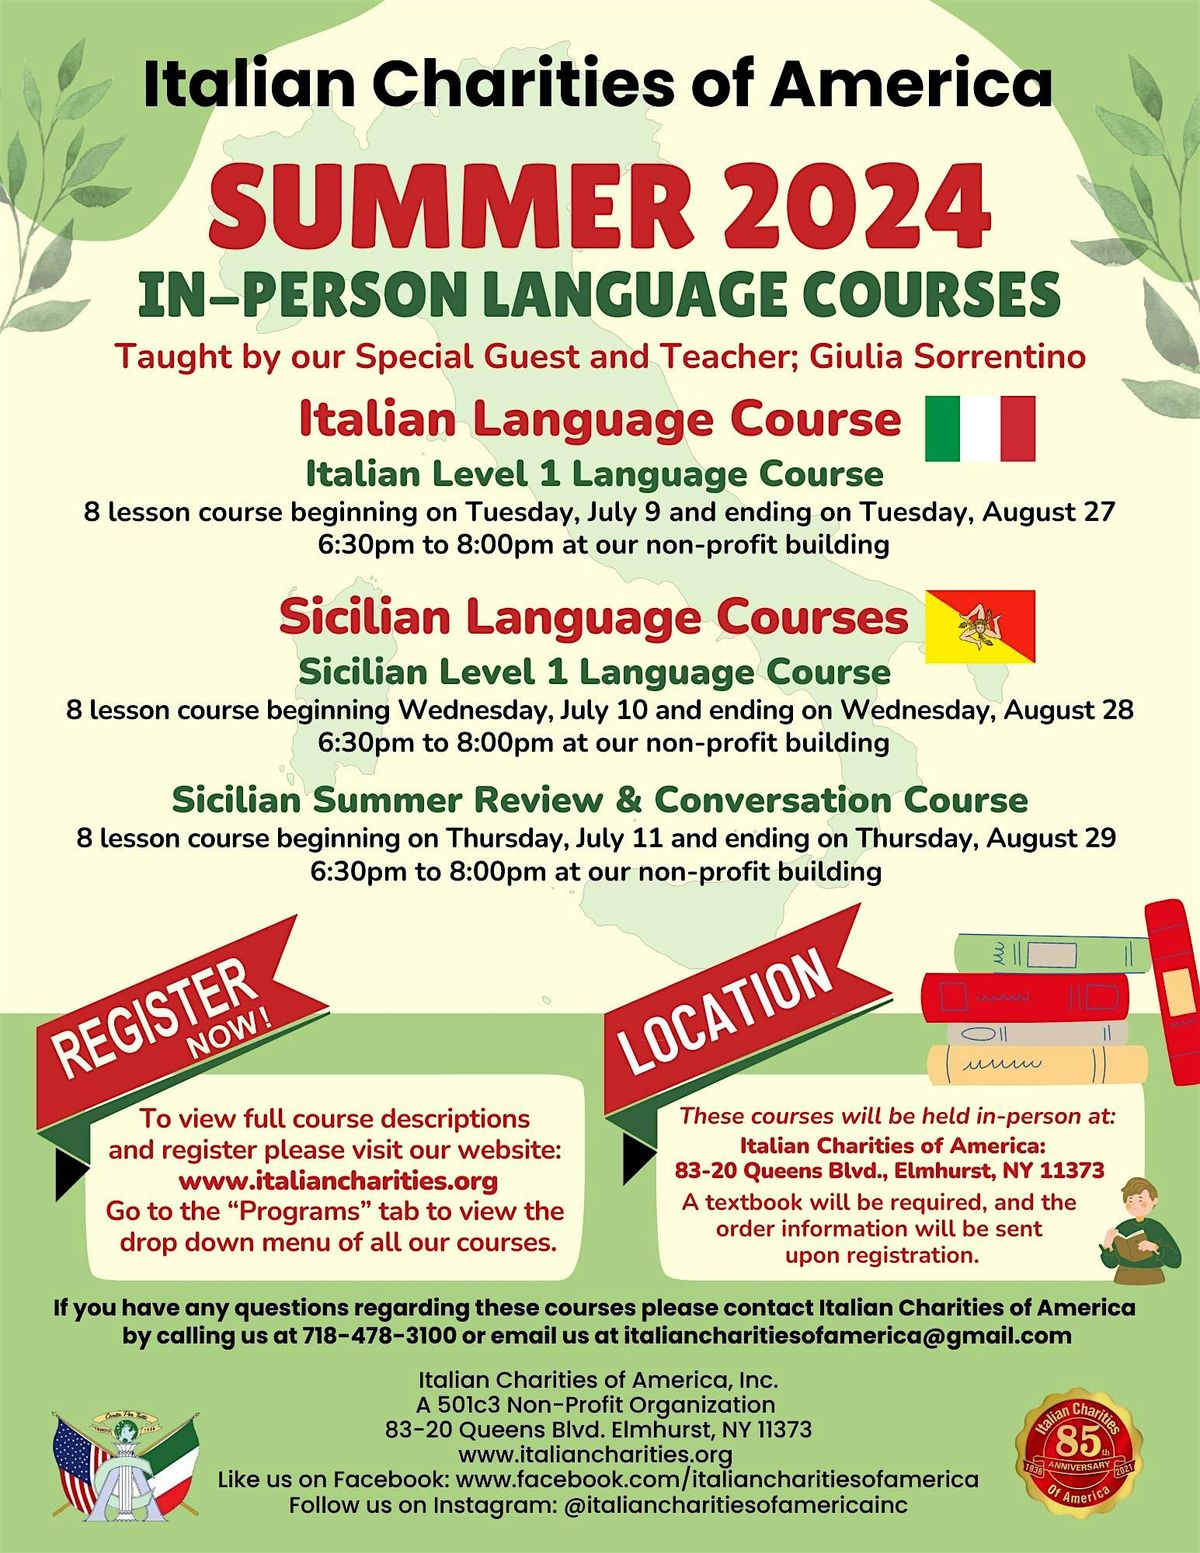 Sicilian Summer Review - Conversation Course